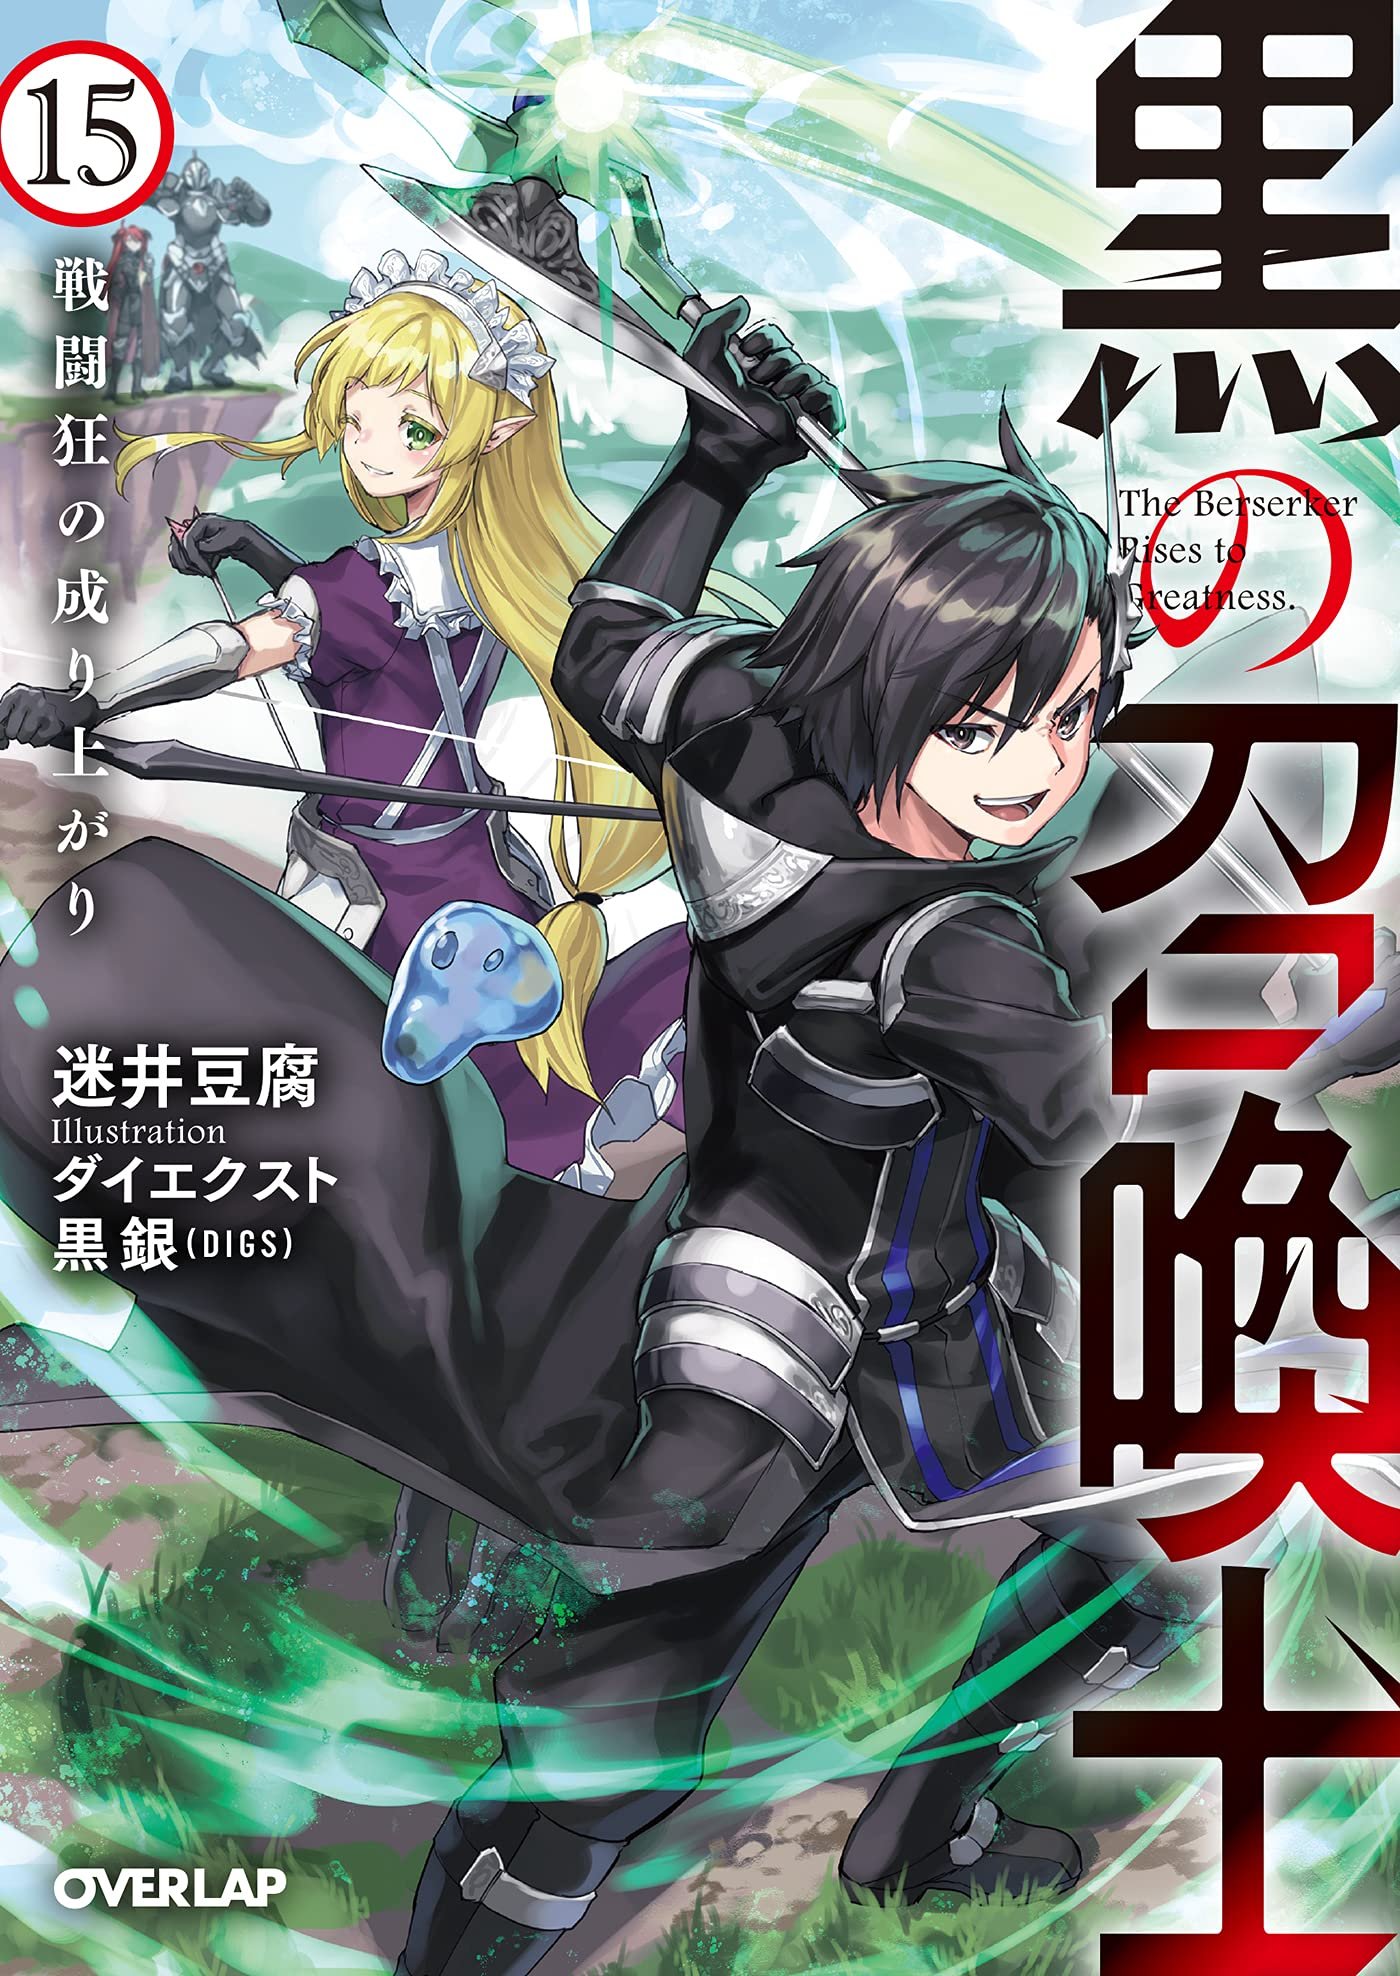 Anime Trending Summoner Vol.15 Light Novel Cover! The Light Novel will be released on August 25 in Japan